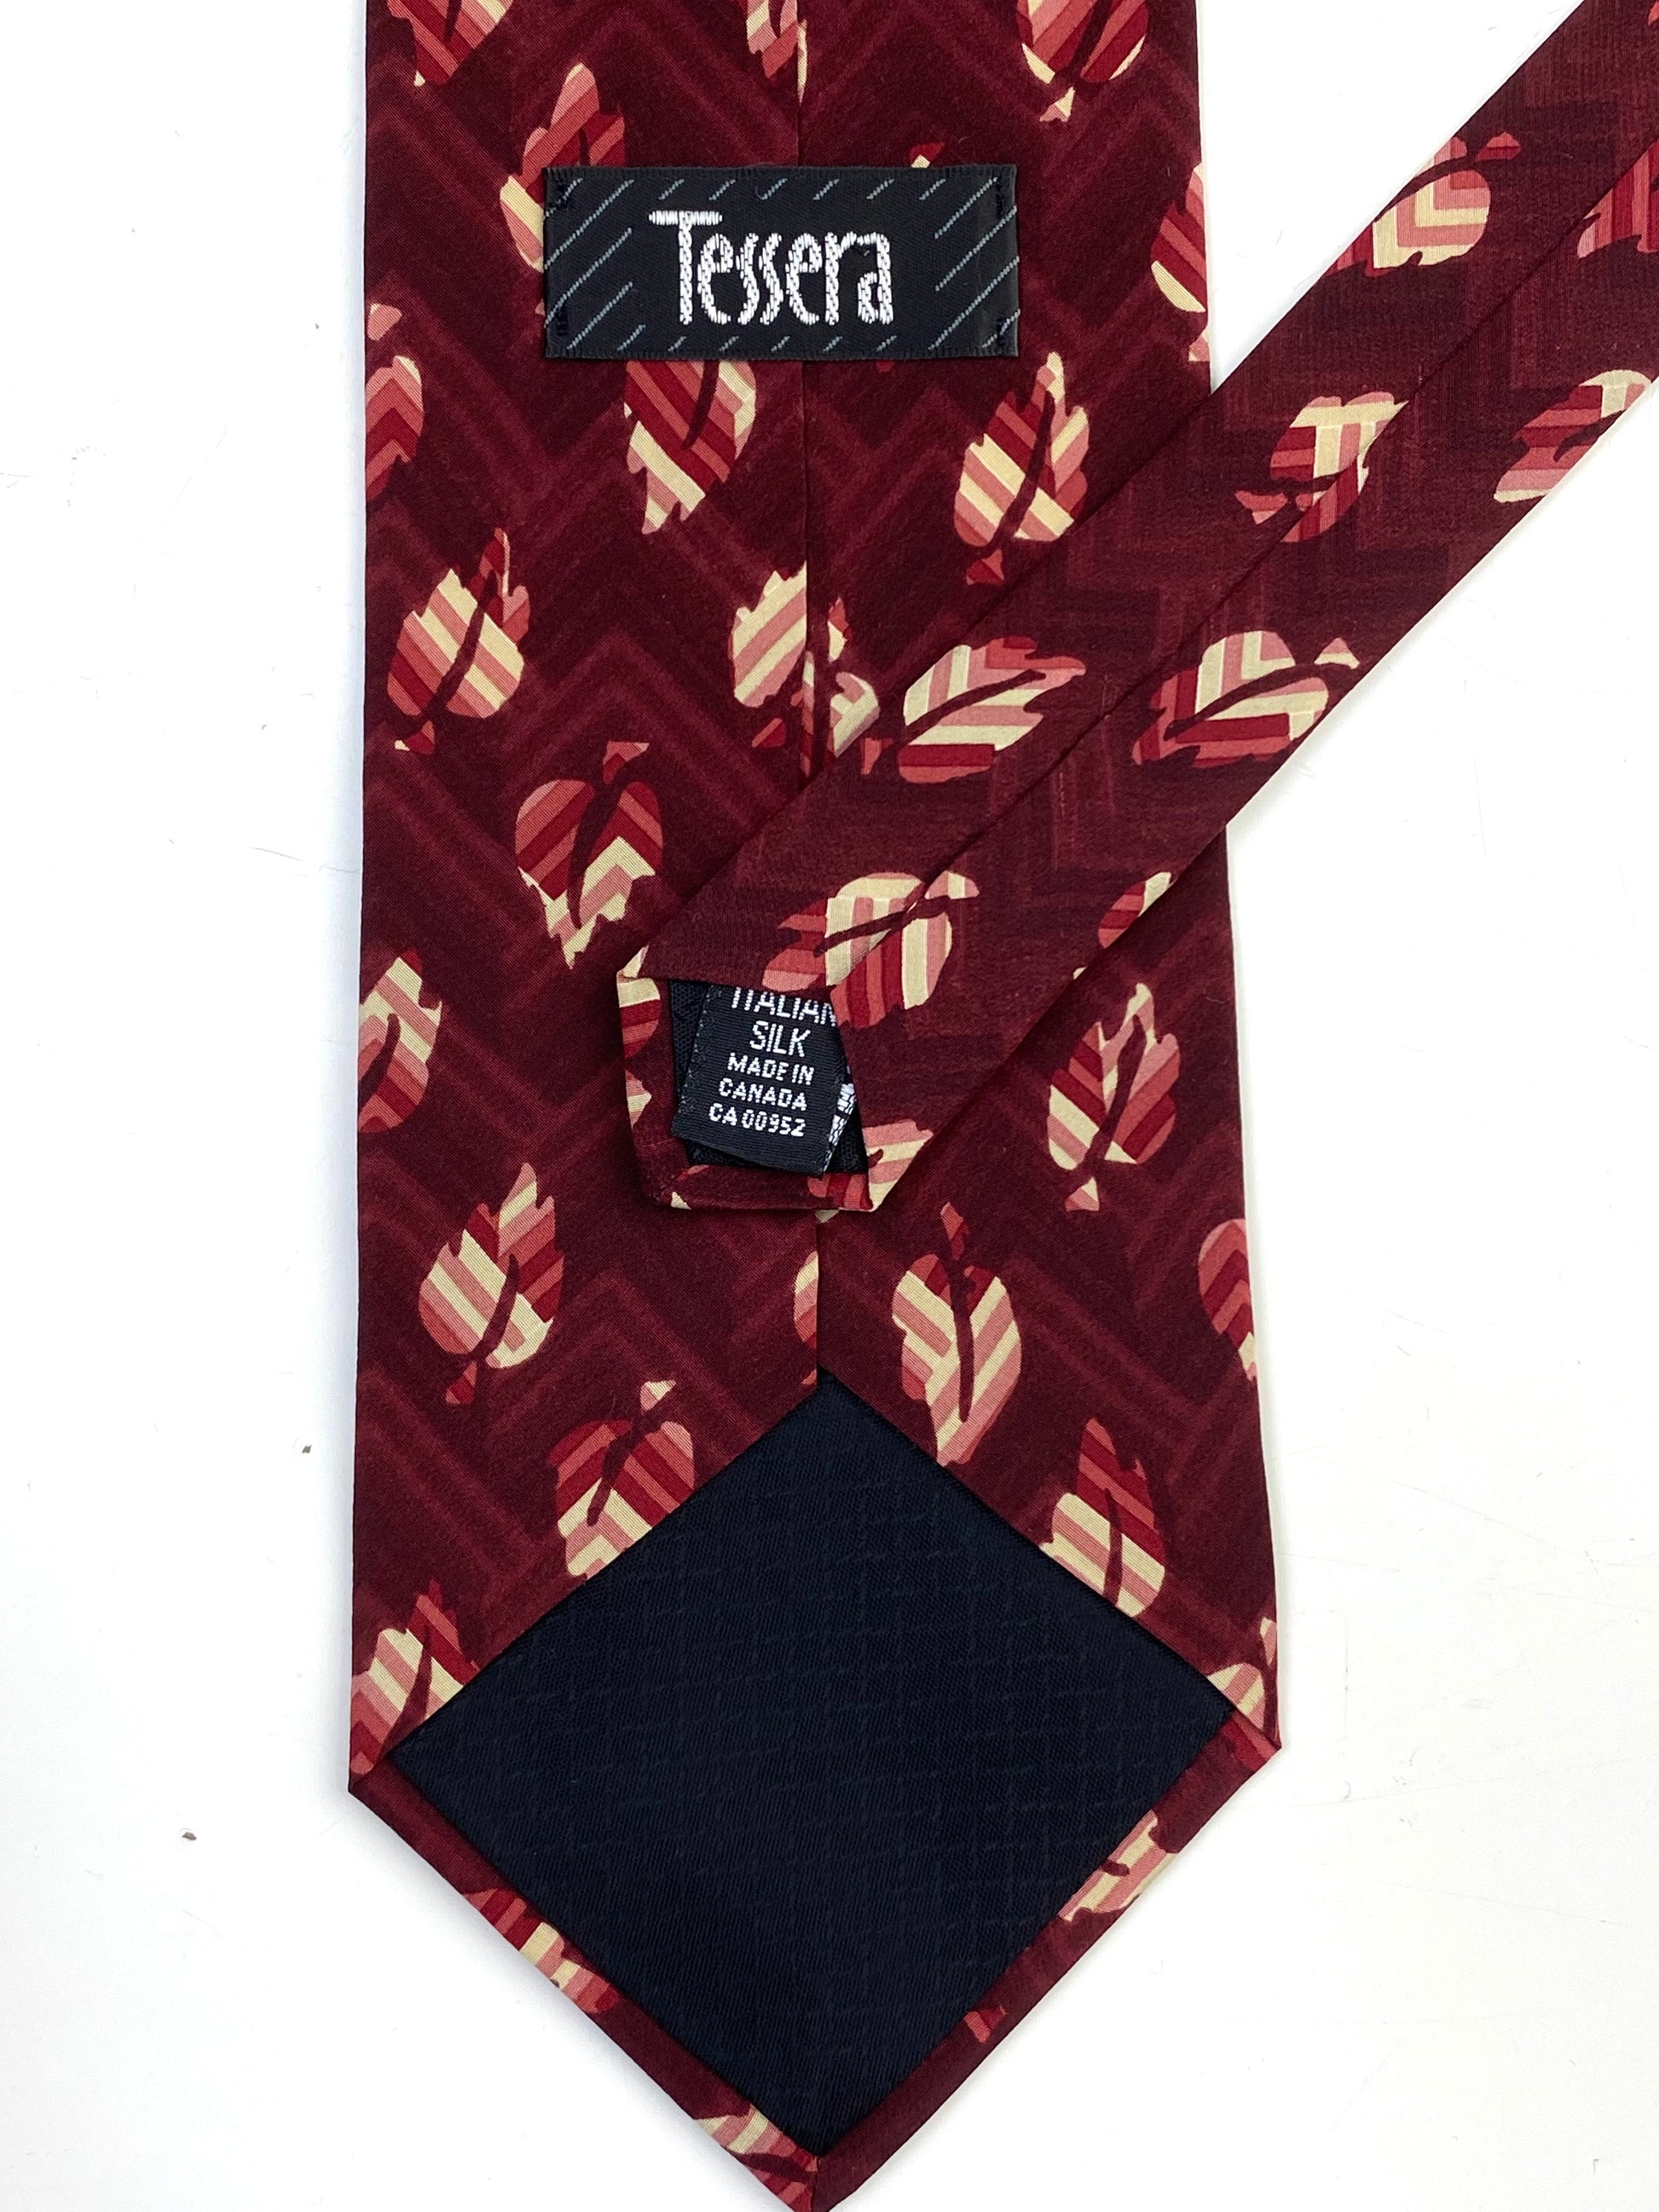 90s Deadstock Silk Necktie, Men's Vintage Wine Leaf Pattern Tie, NOS